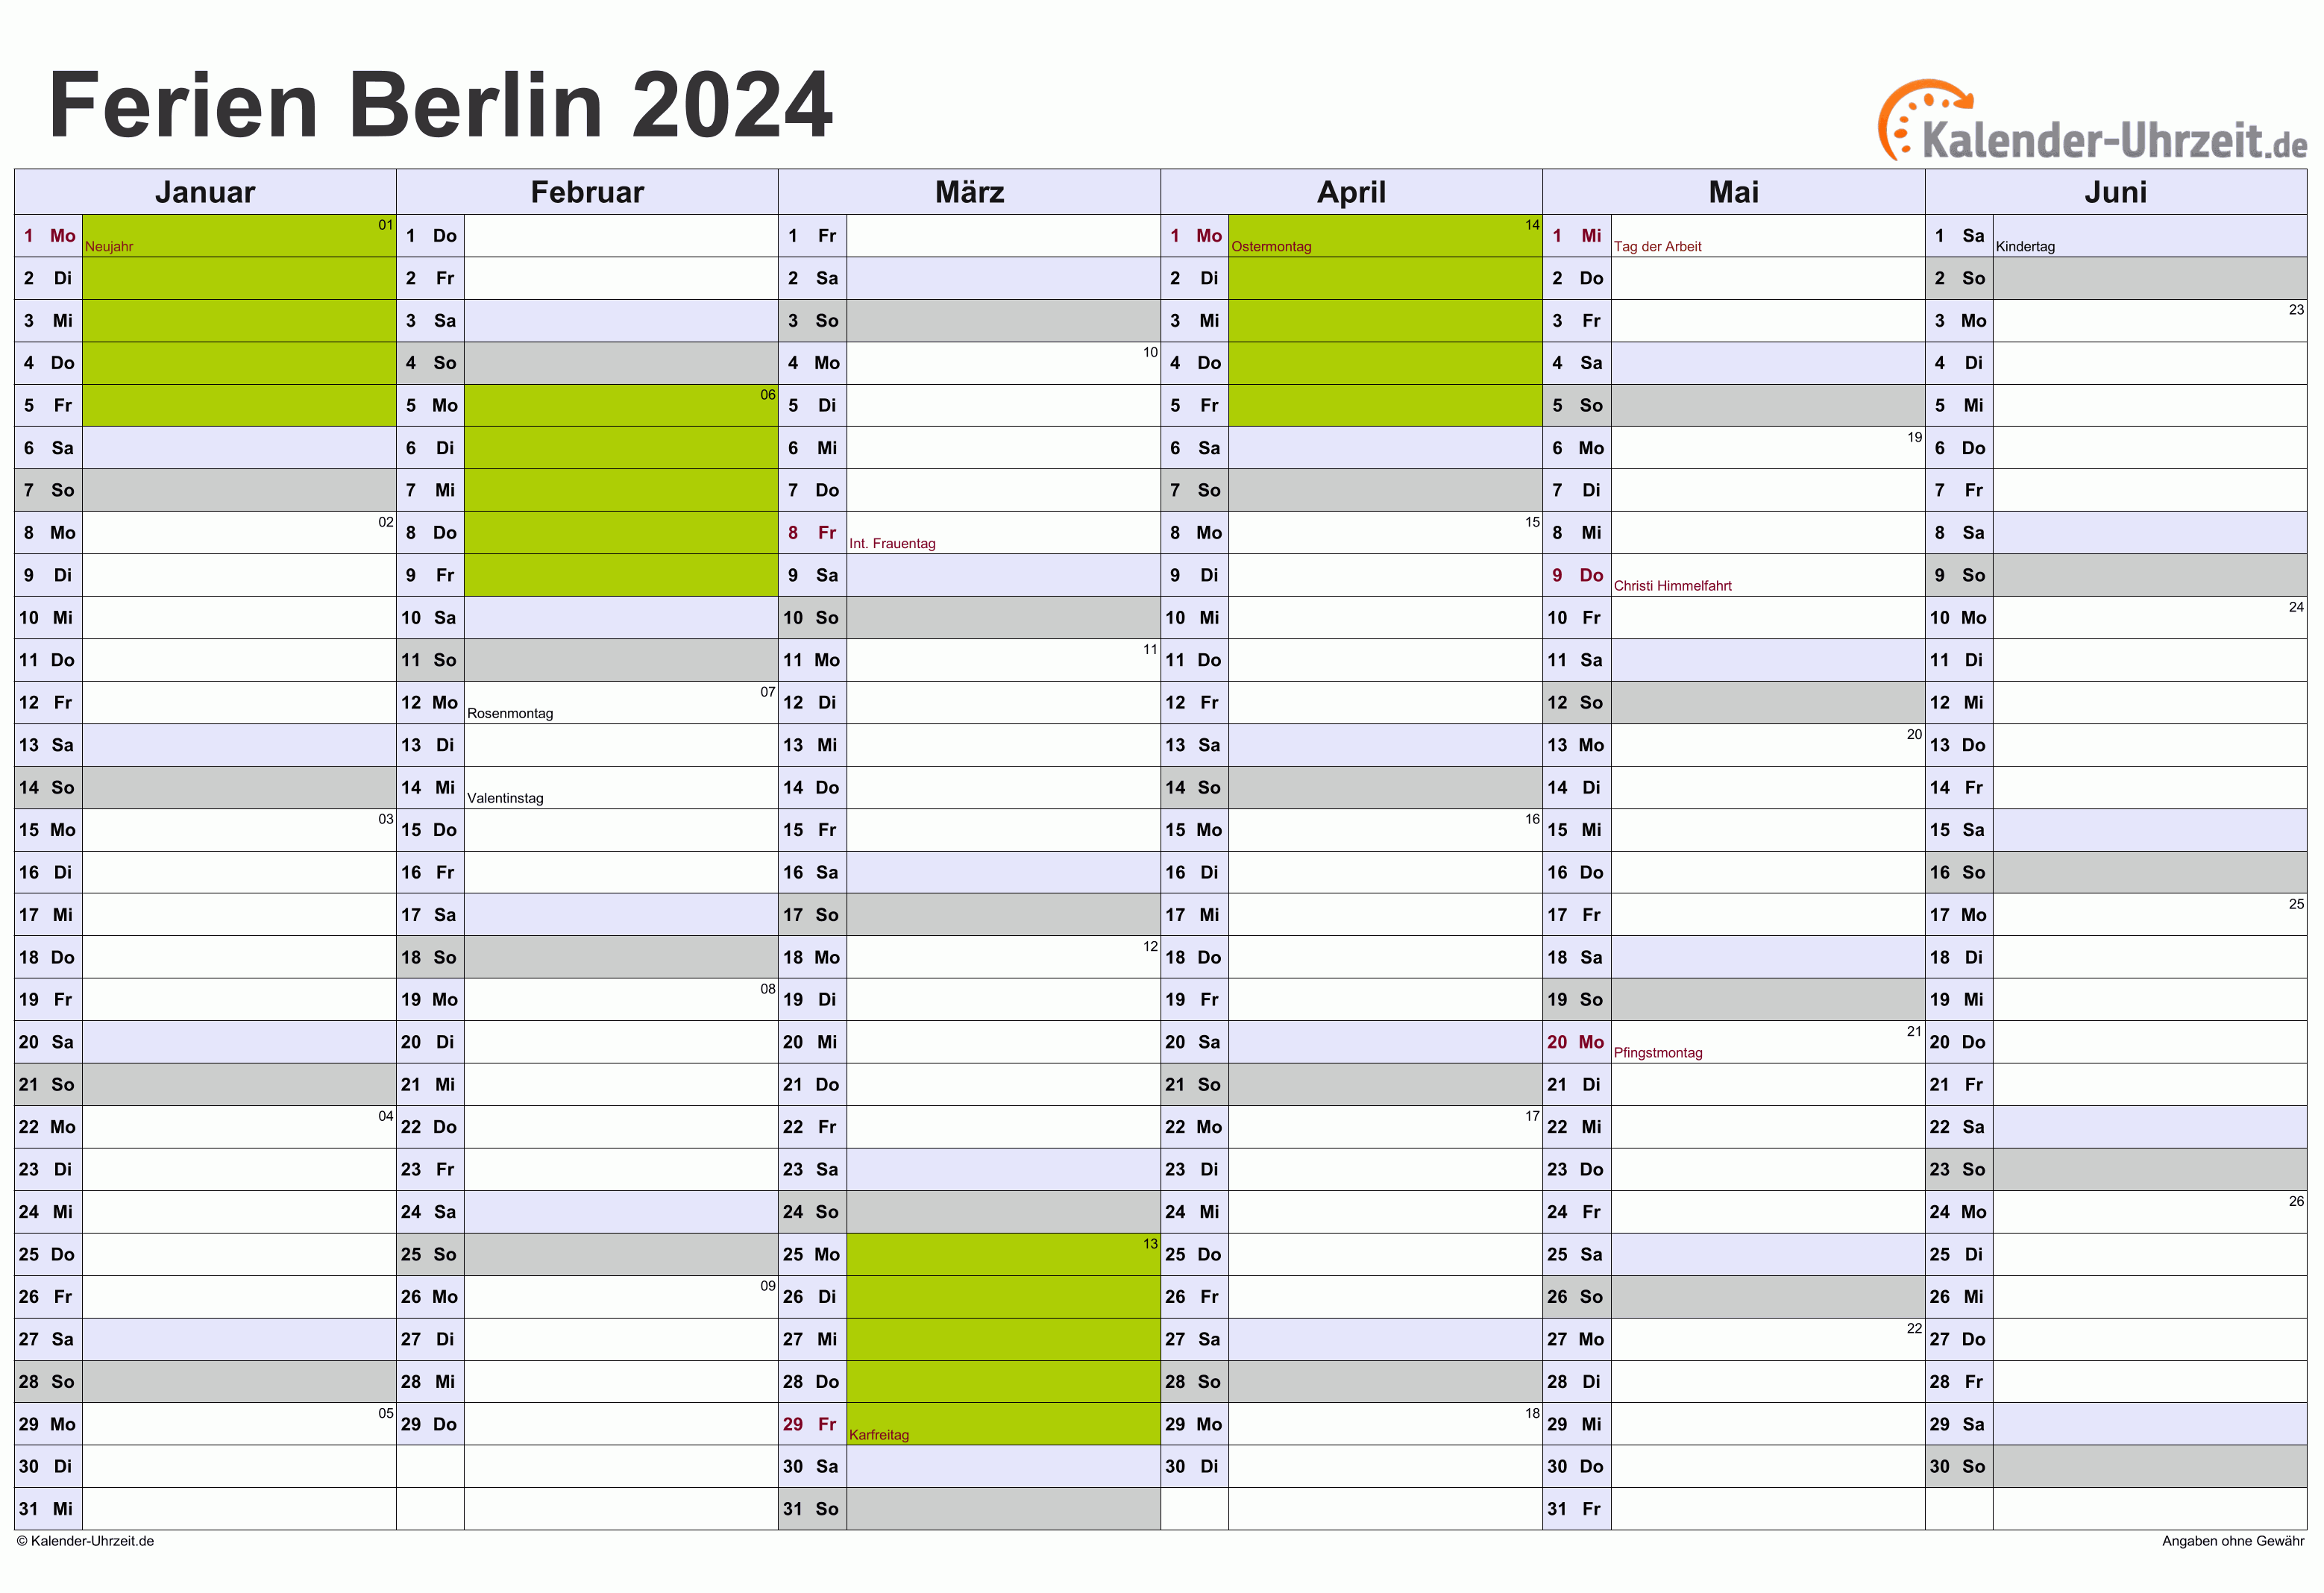 Ferien Berlin 2024 Ferienkalender zum Ausdrucken